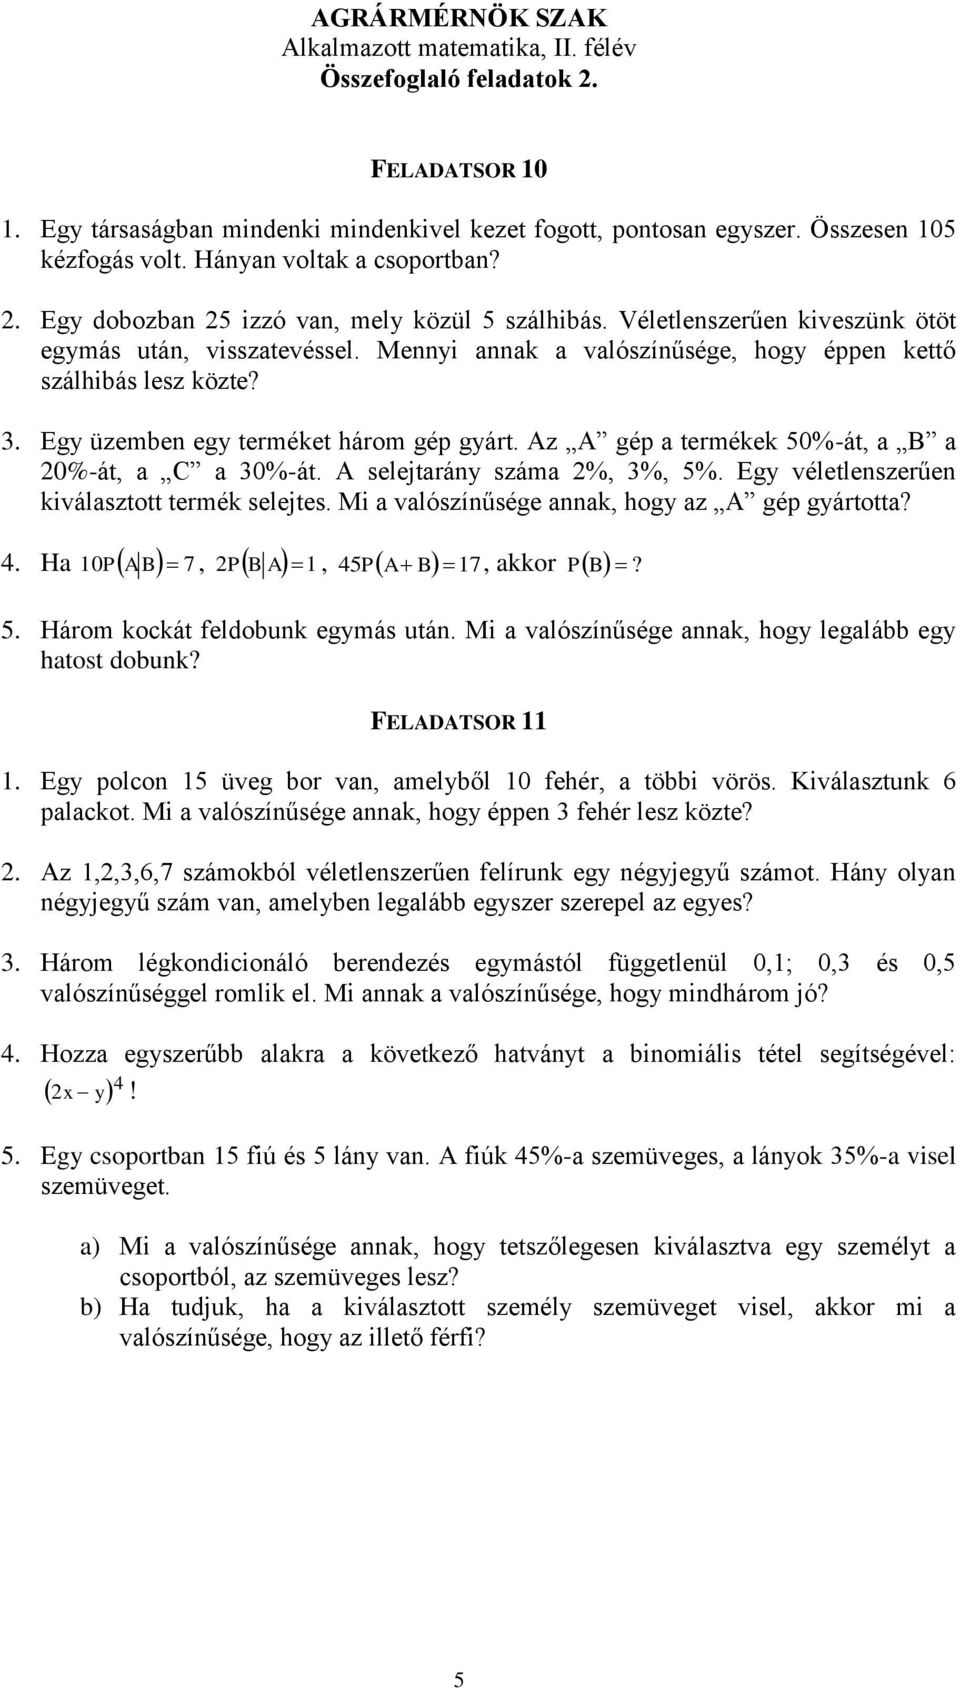 AGRÁRMÉRNÖK SZAK Alkalmazott matematika, II. félév Összefoglaló feladatok A  síkban 16 db általános helyzetű pont hány egyenest határoz meg? - PDF  Ingyenes letöltés